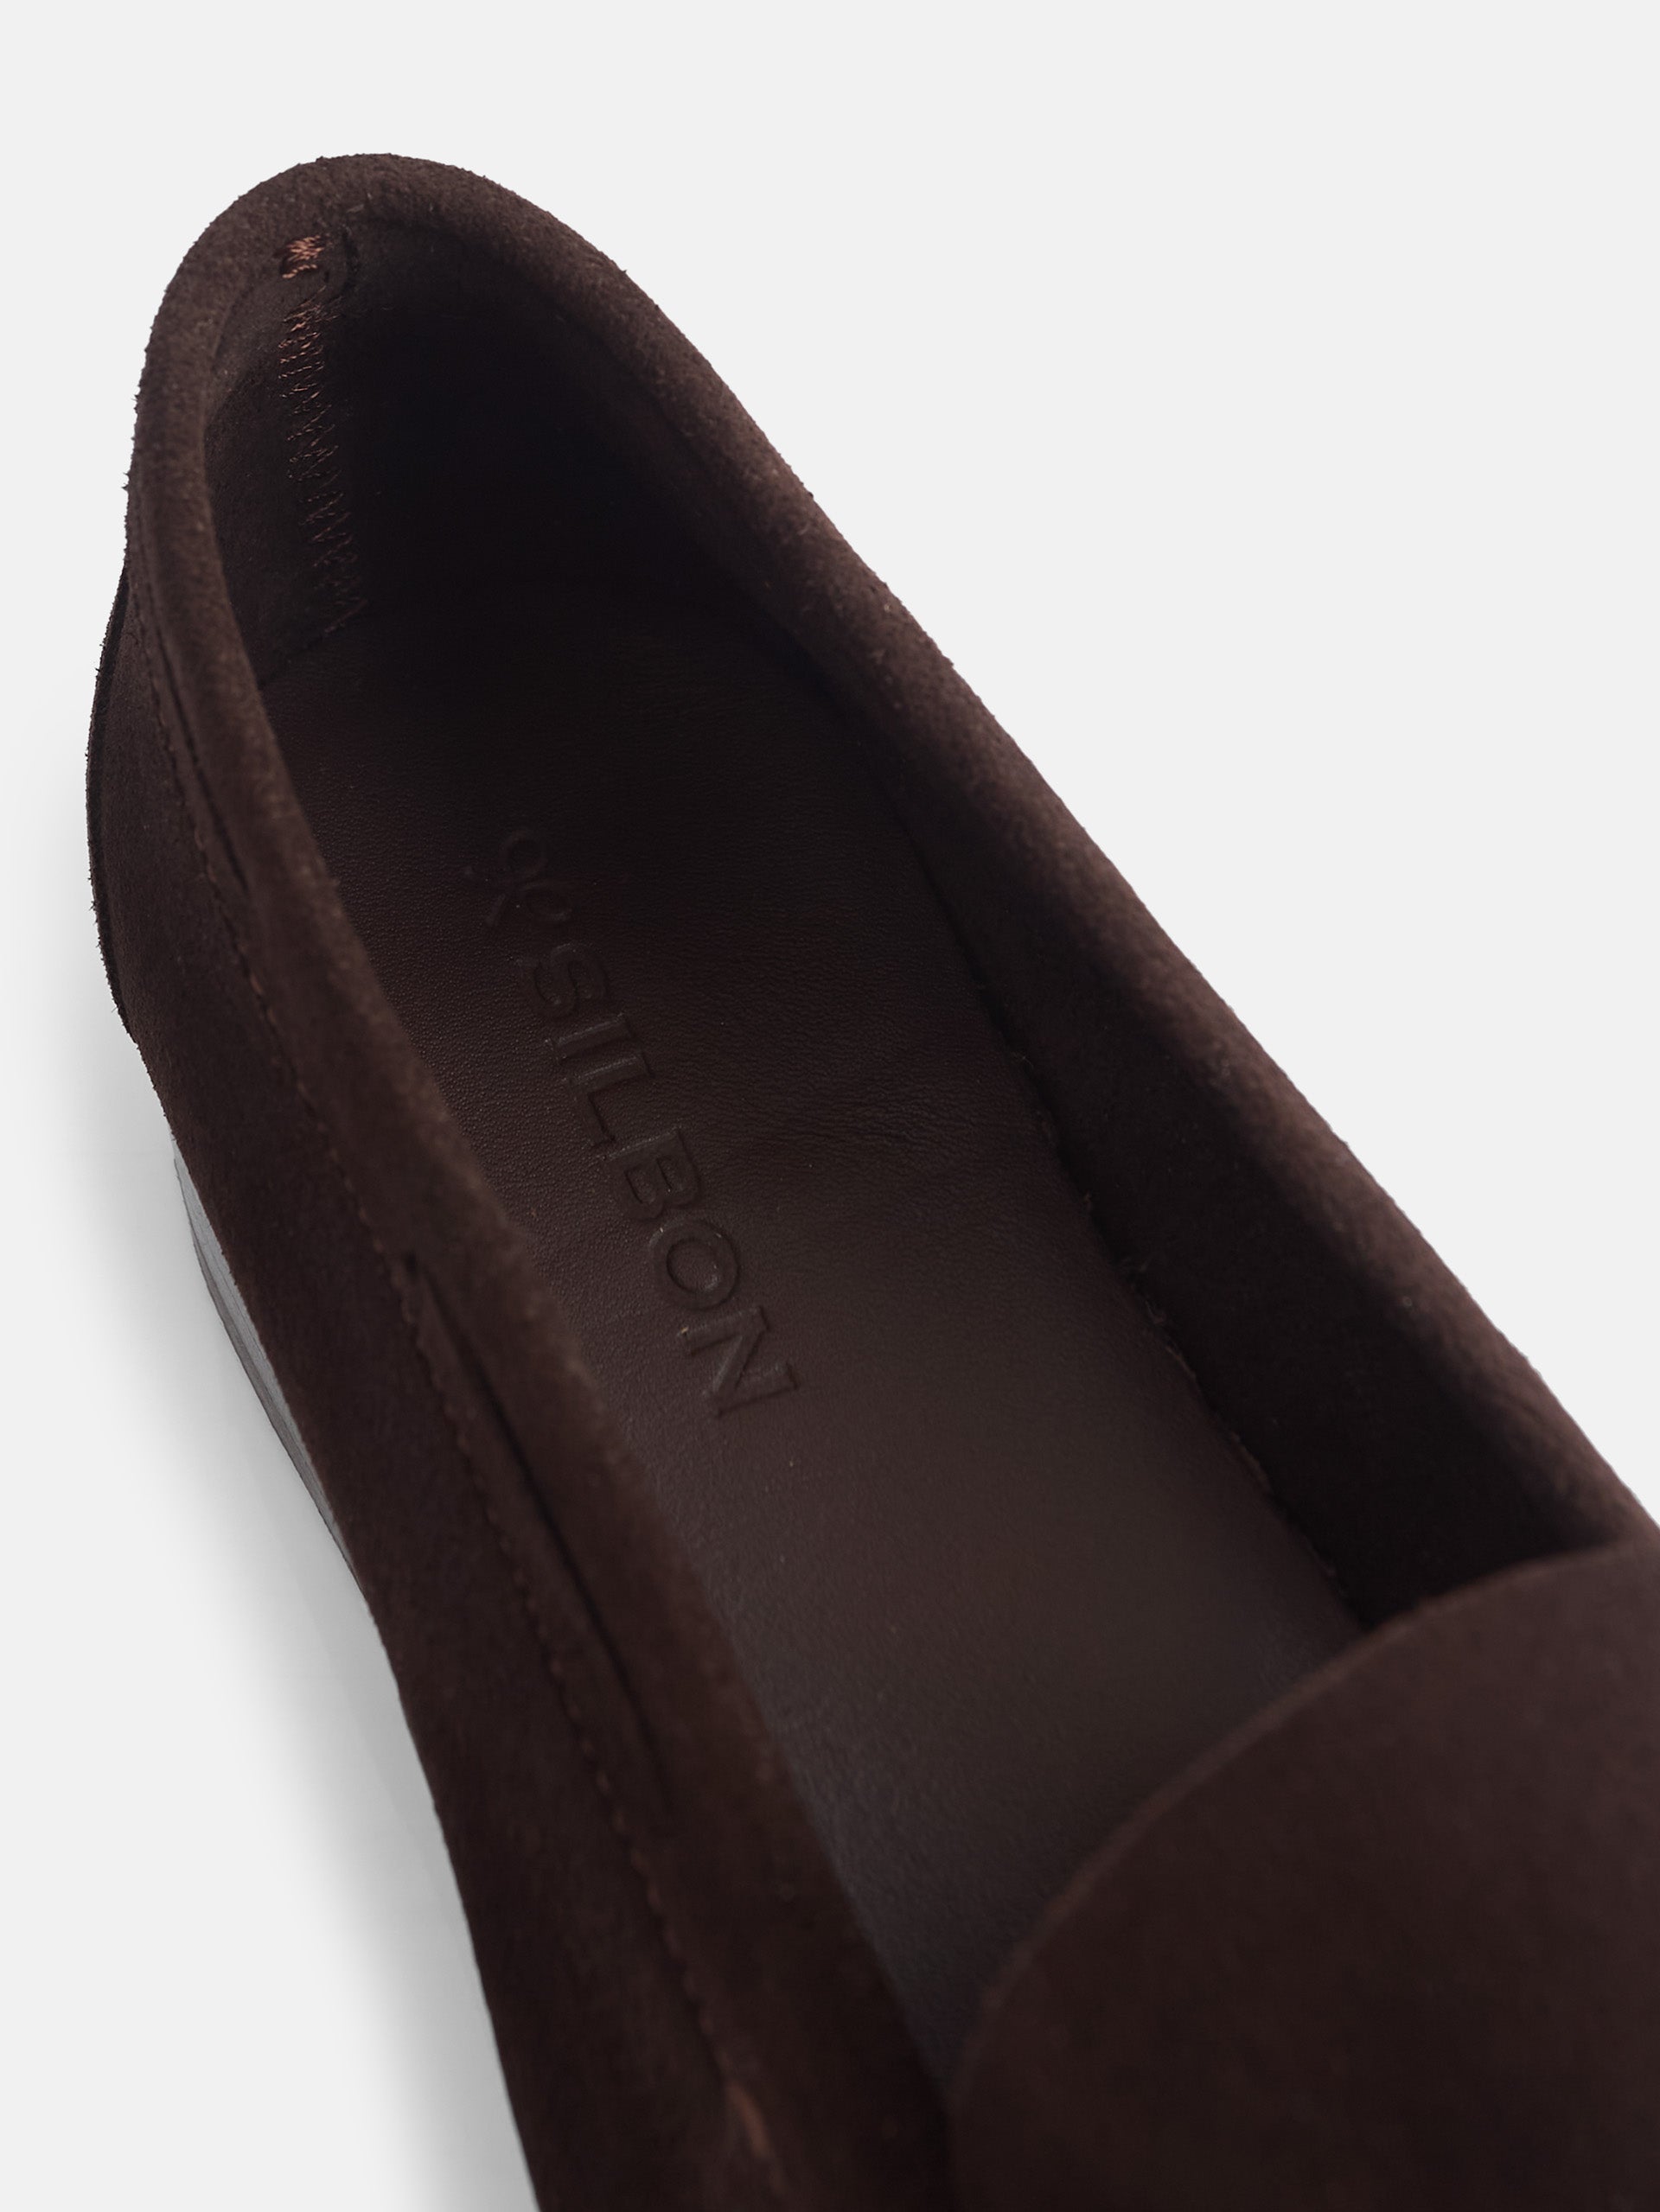 Silbon - Zapato Sport Marrón   #ZapatosCasual #ChaussureCasual #CasualShoe #Silbon #SilbonRules  #EstiloSilbon